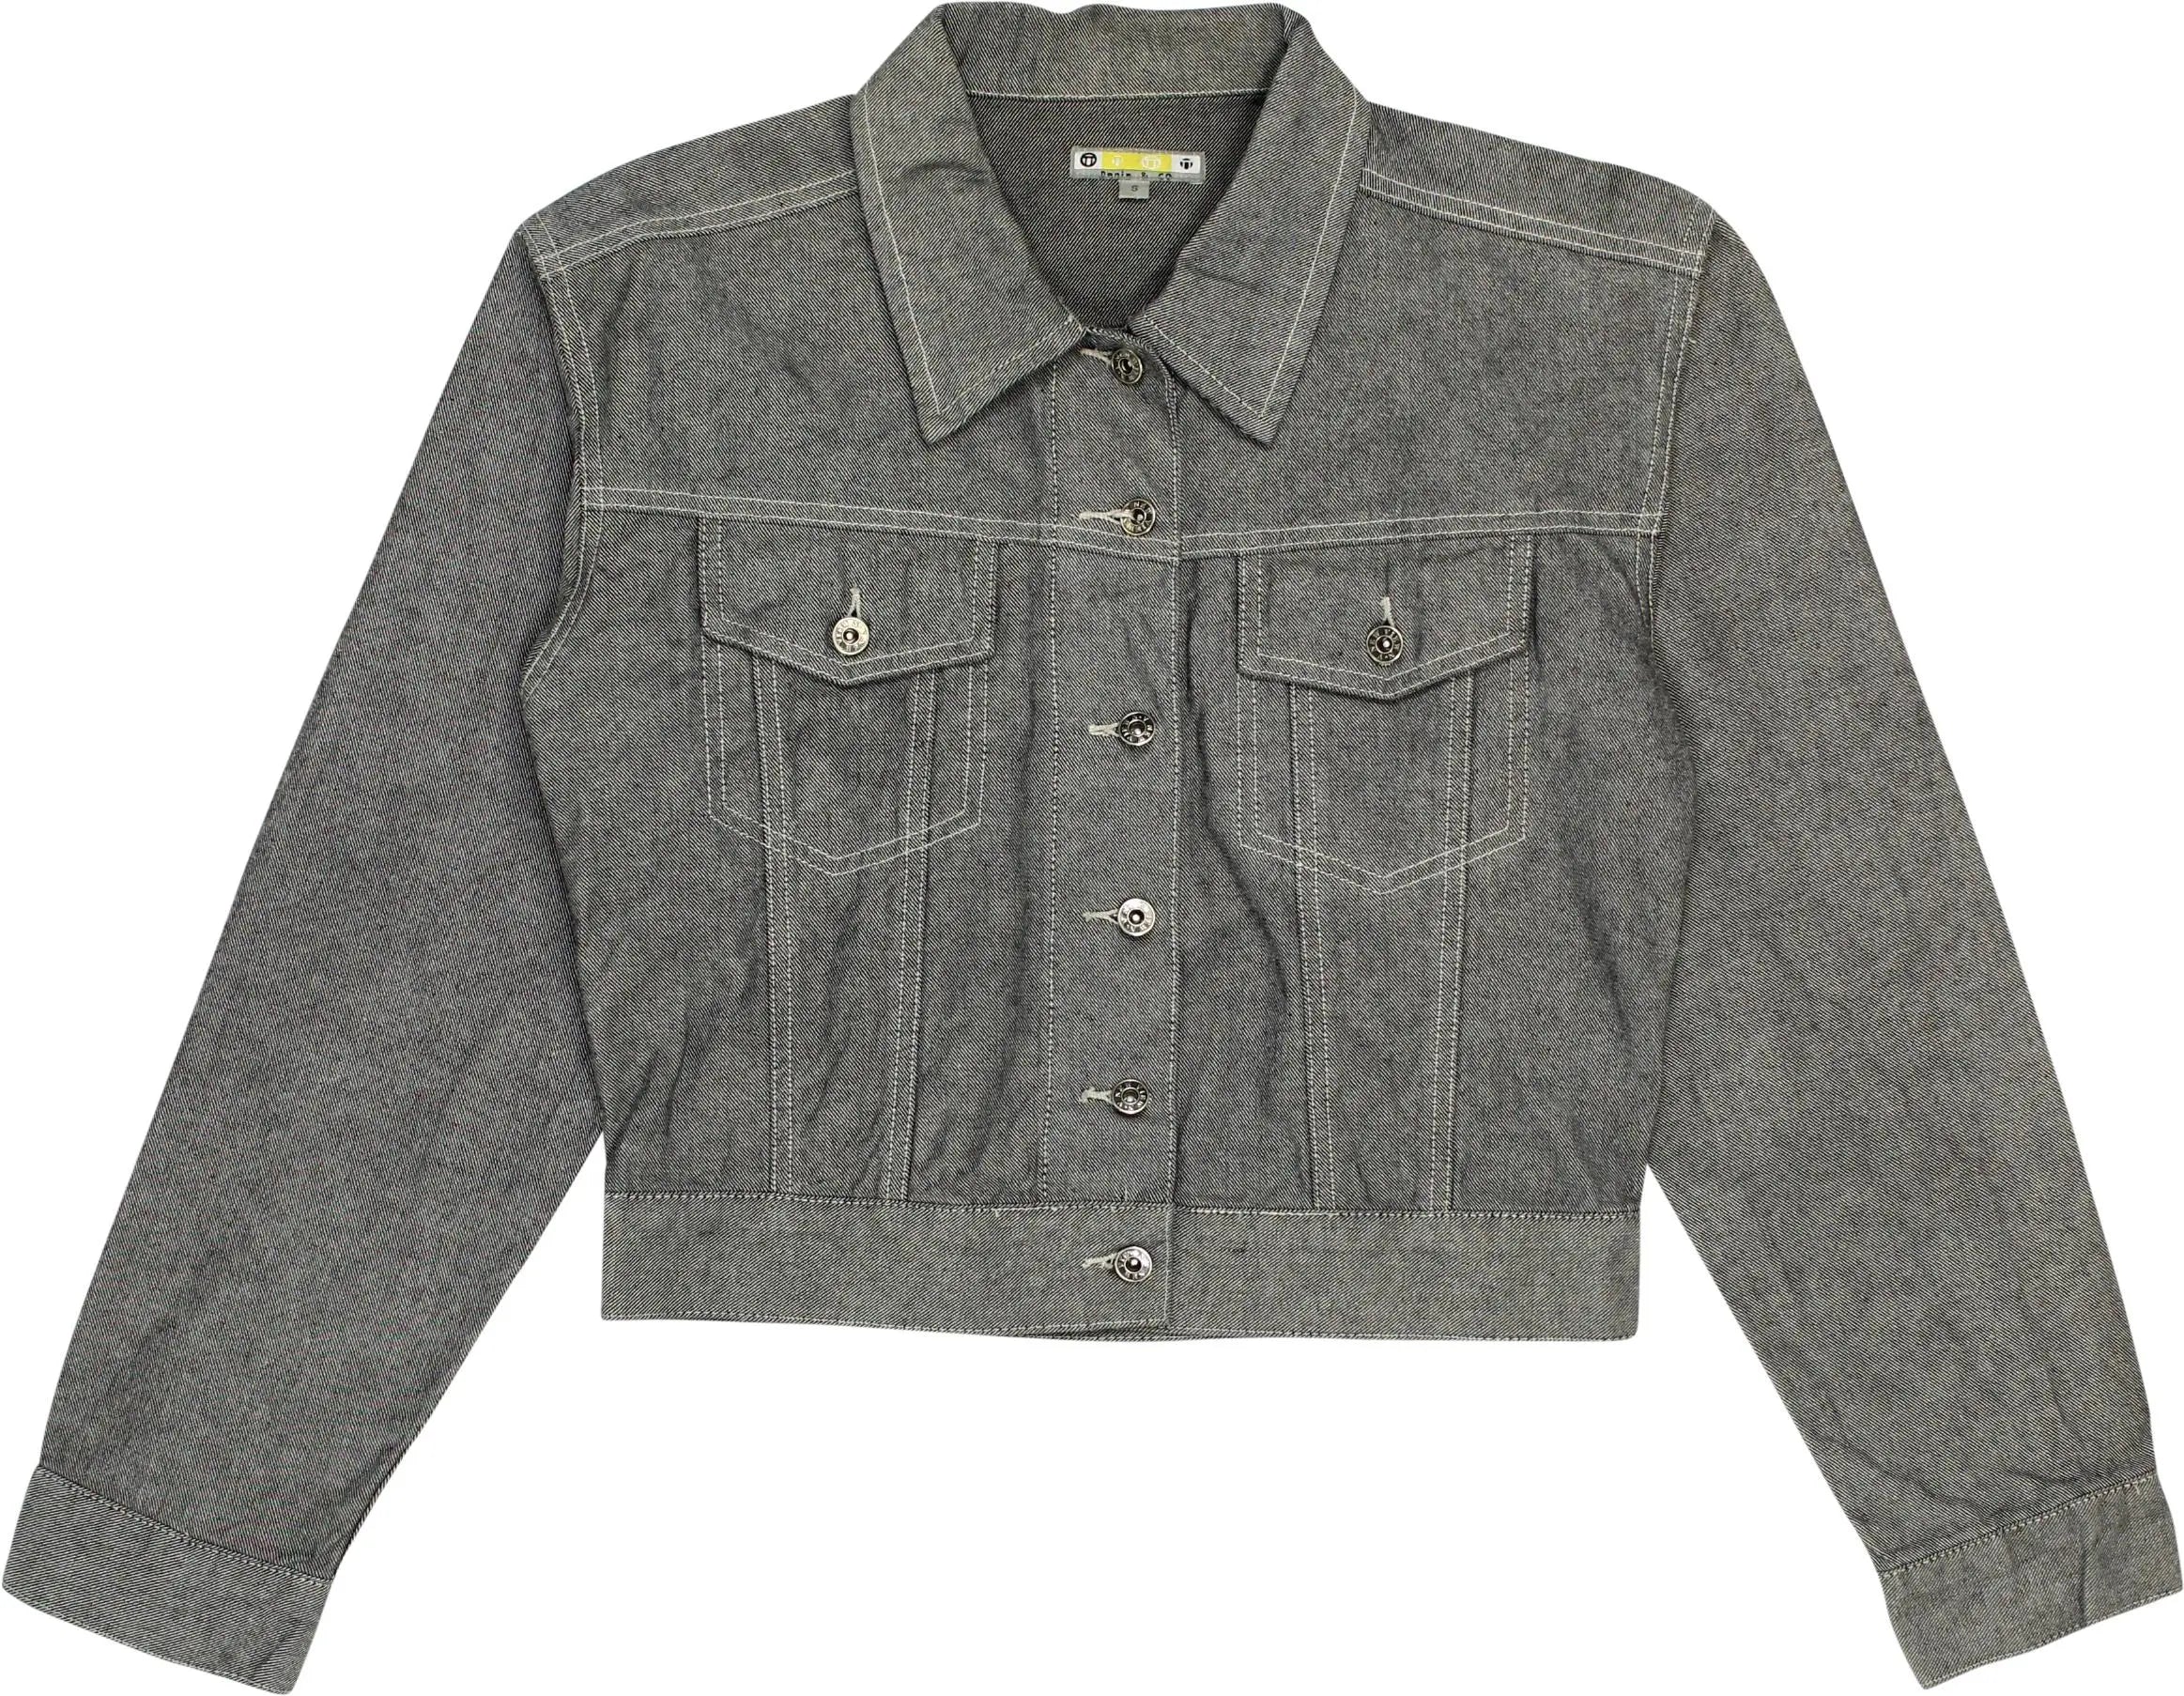 Denim & Co - Grey Denim Jacket- ThriftTale.com - Vintage and second handclothing